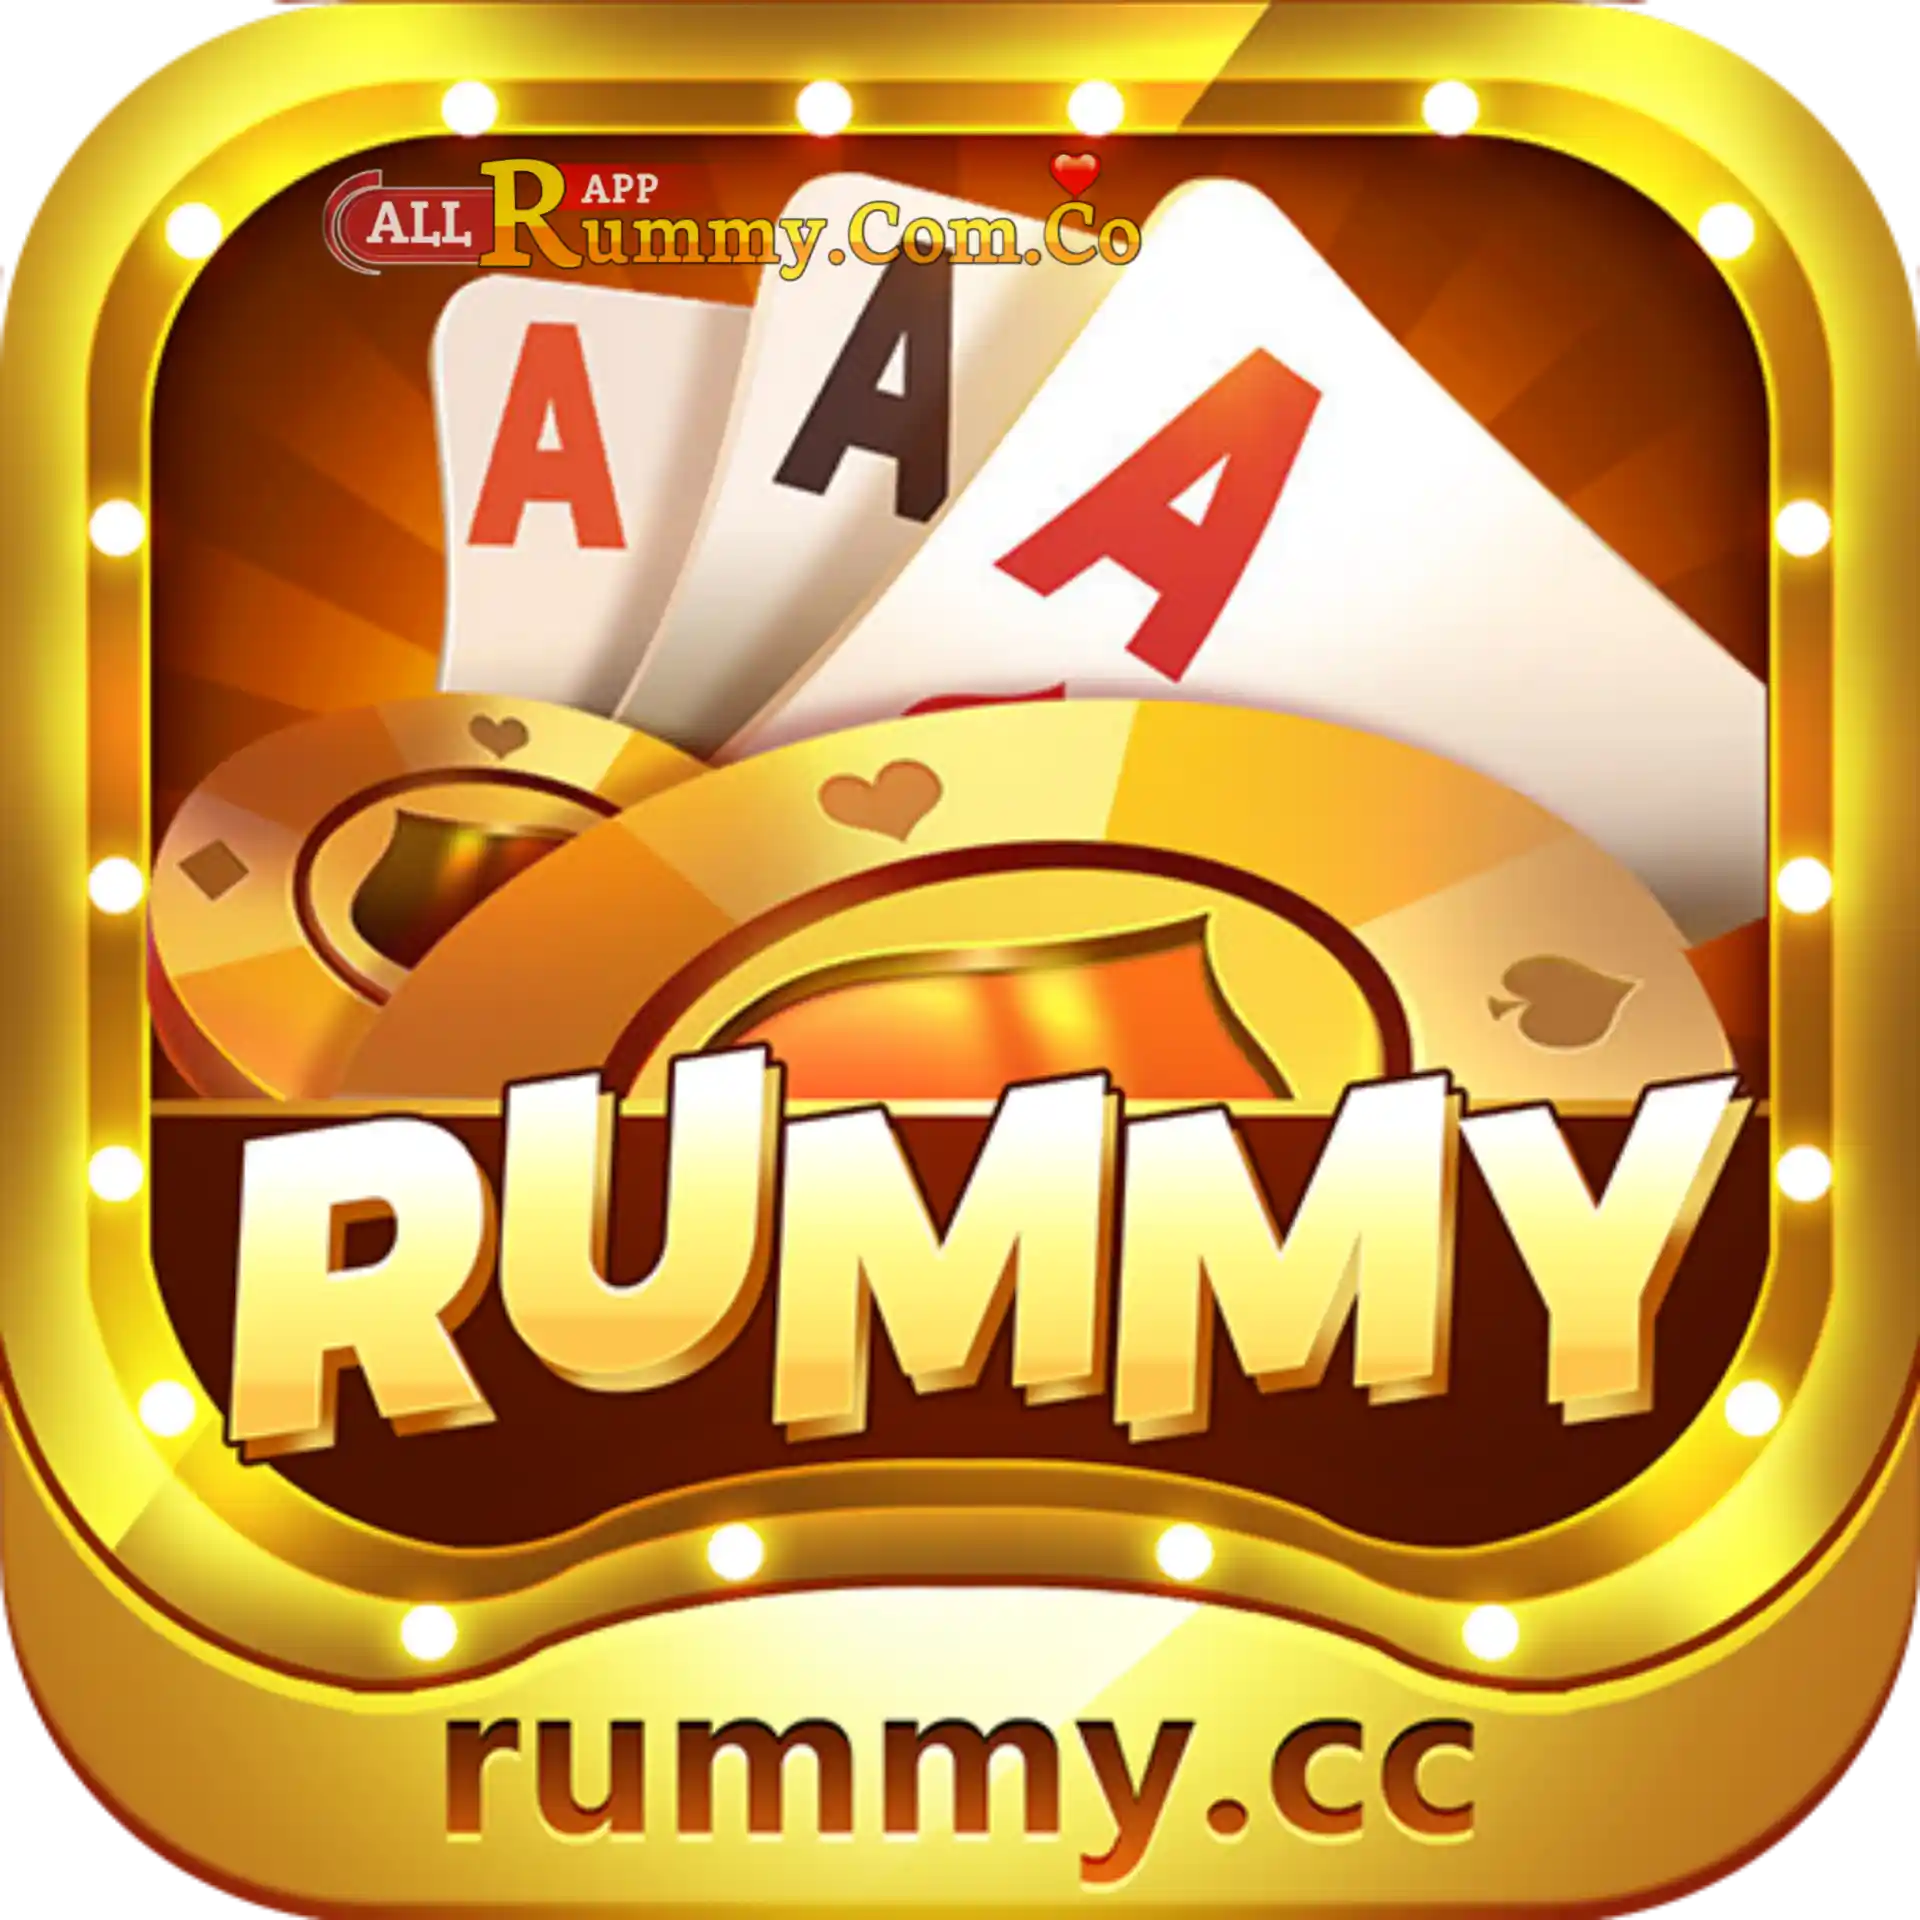 Rummy Cc- All Rummy App - Rummy All App - All Rummy Store